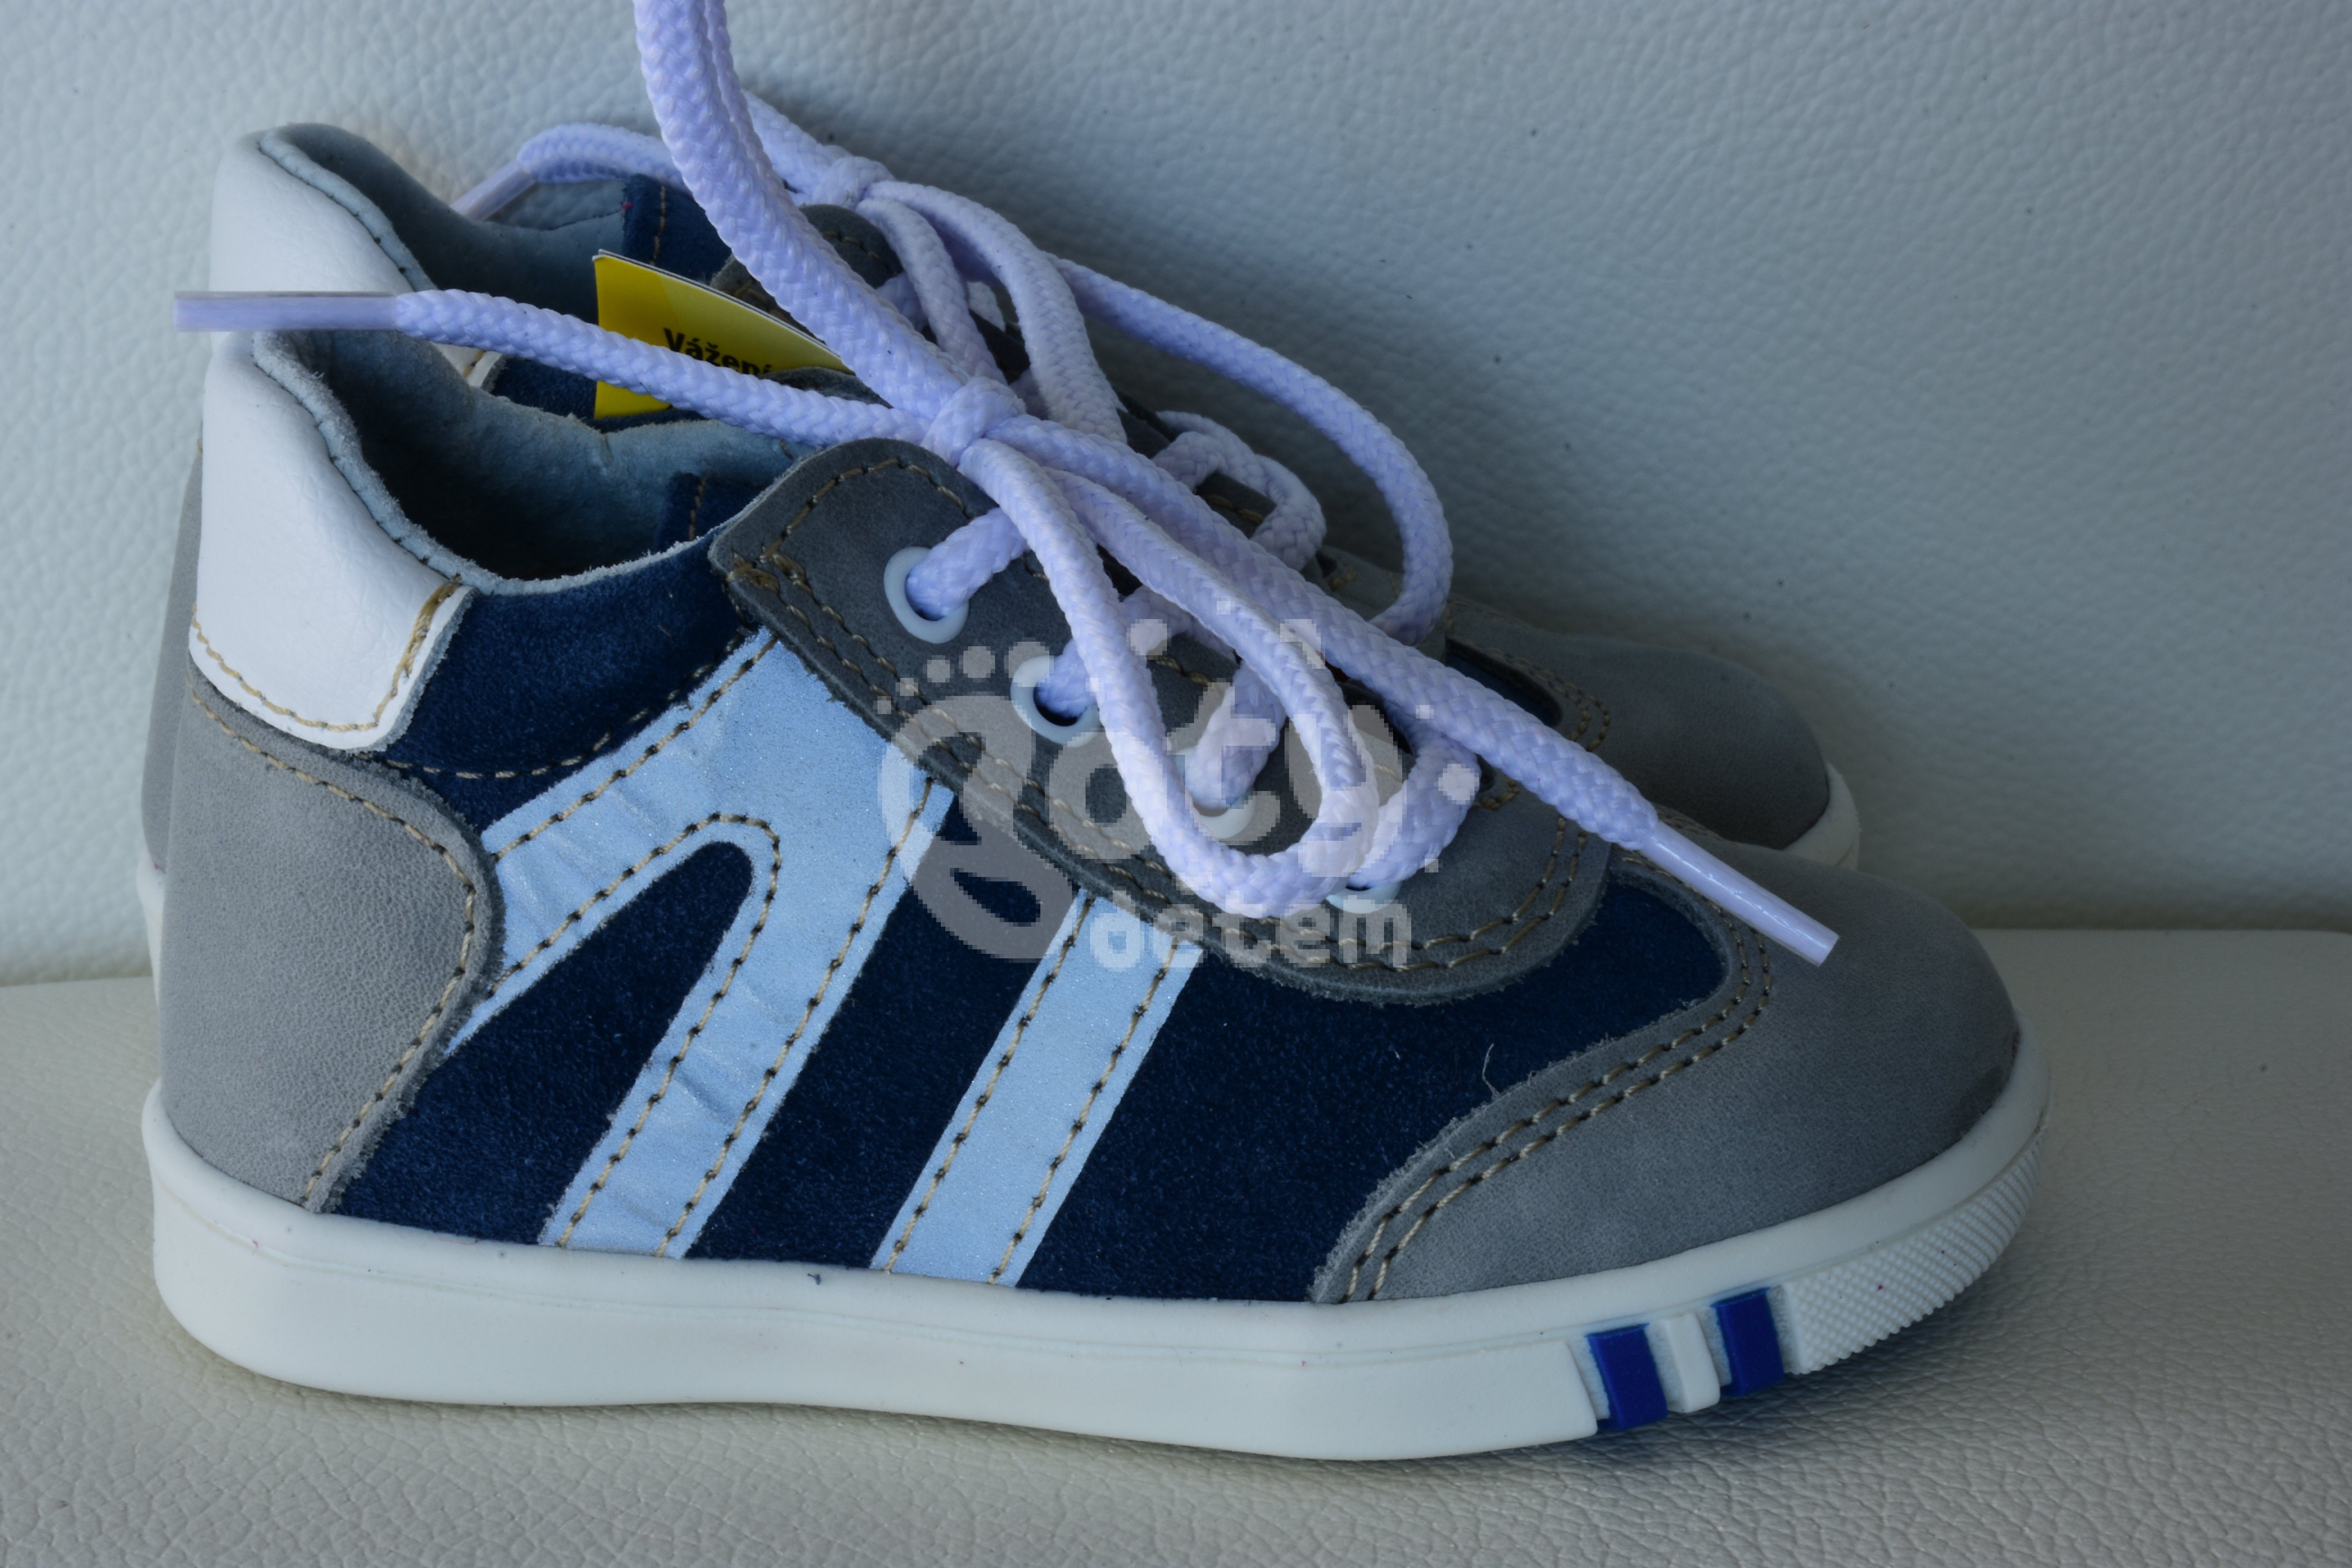 Jonap kožené boty 014 M modrošedá 2